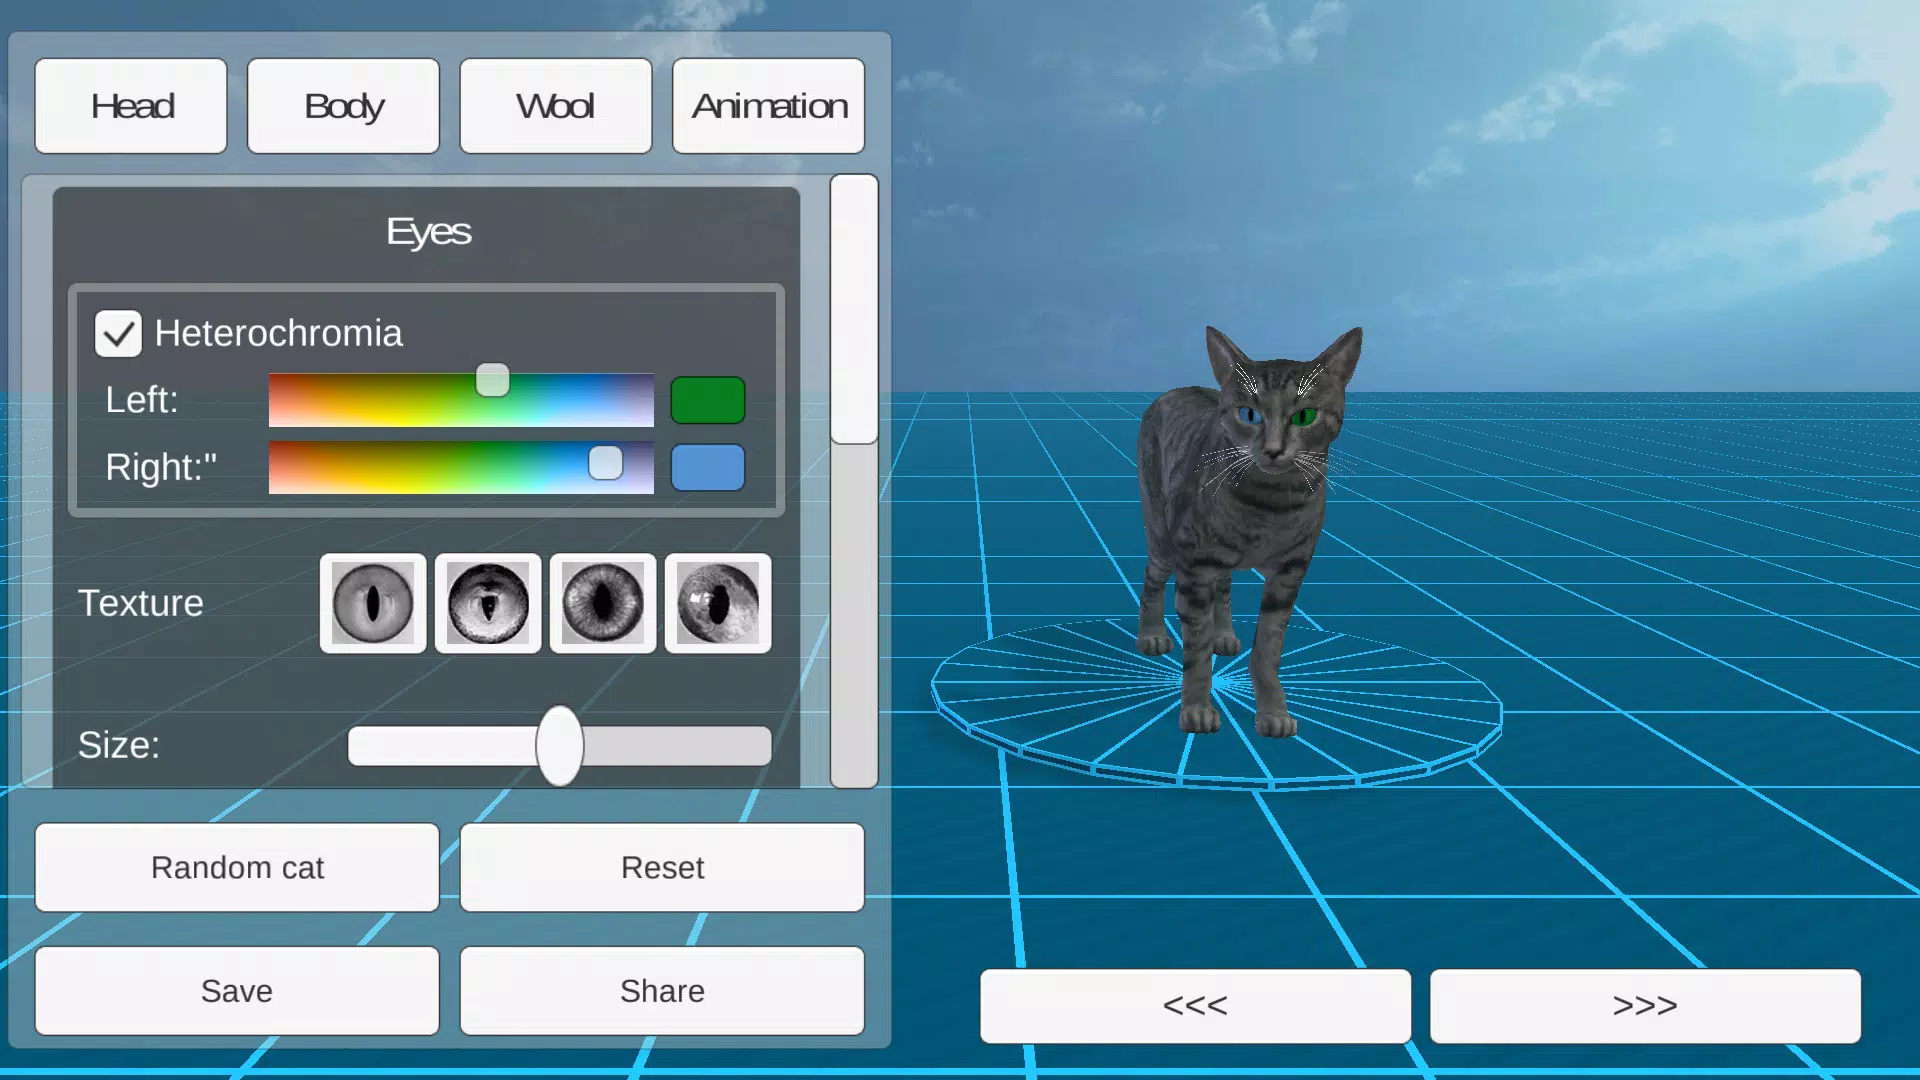 Tải xuống APK Wild Cats: Avatar Maker 3D - một ứng dụng cho phép tạo ngẫu nhiên avatar chất lượng cao và 3D. Với công nghệ tối ưu, ứng dụng sẽ giúp bạn tạo ra một avatar hoàn hảo cho Roblox với các lựa chọn đặc biệt và các chủ đề đa dạng.